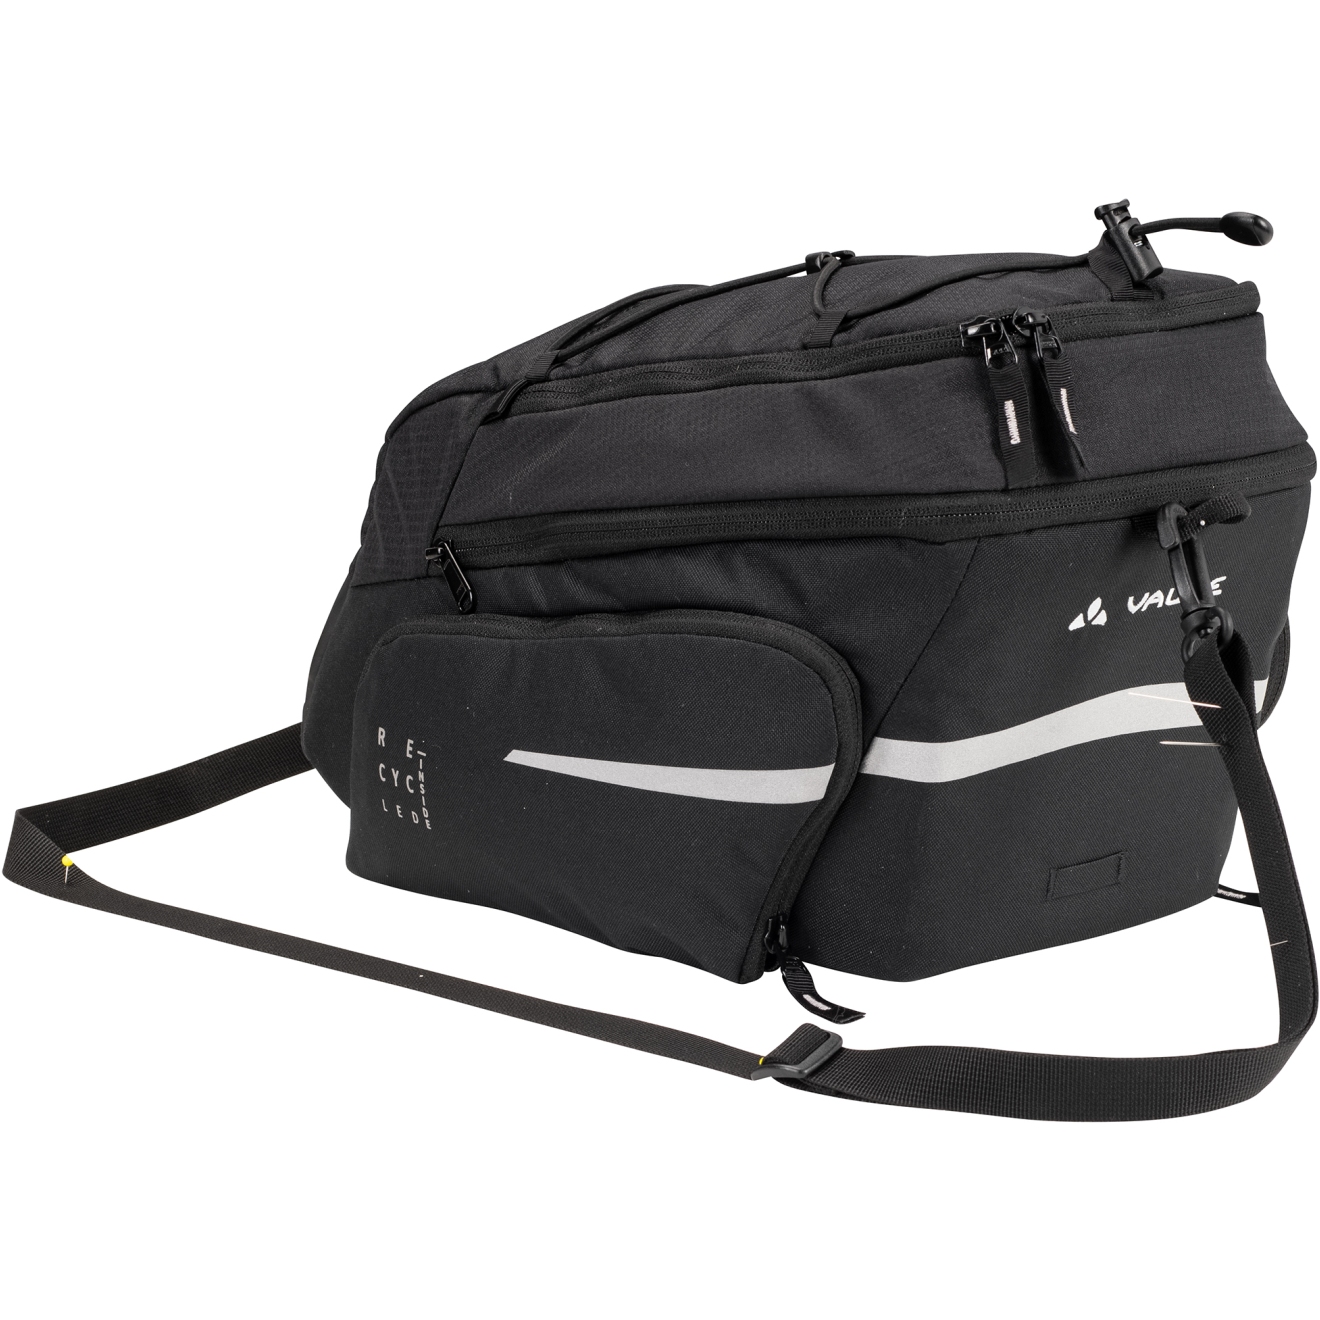 Produktbild von Vaude Silkroad Plus Gepäckträgertasche 9+7L - schwarz